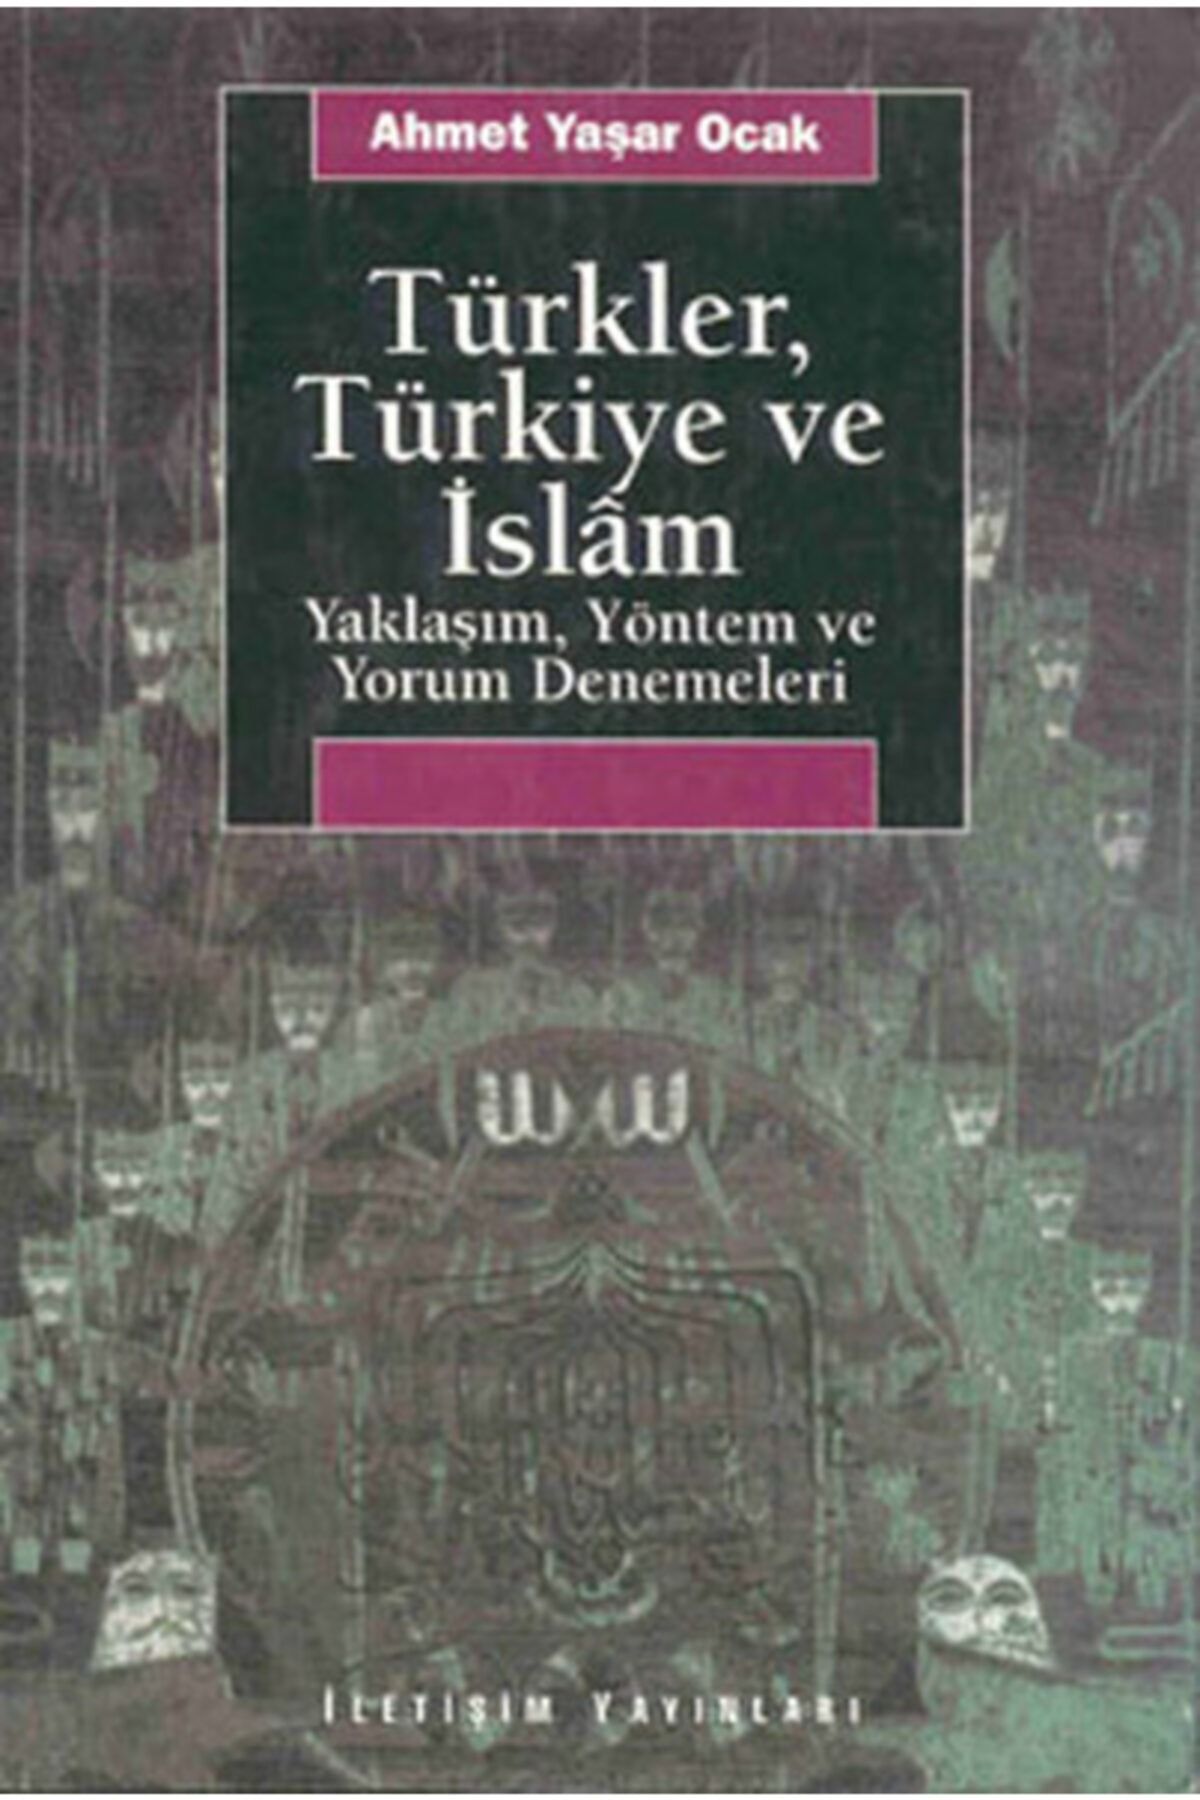 İletişim Yayınları Türkler, Türkiye Ve Islam: Yaklaşım, Yöntem Ve Yorum Denemeleri